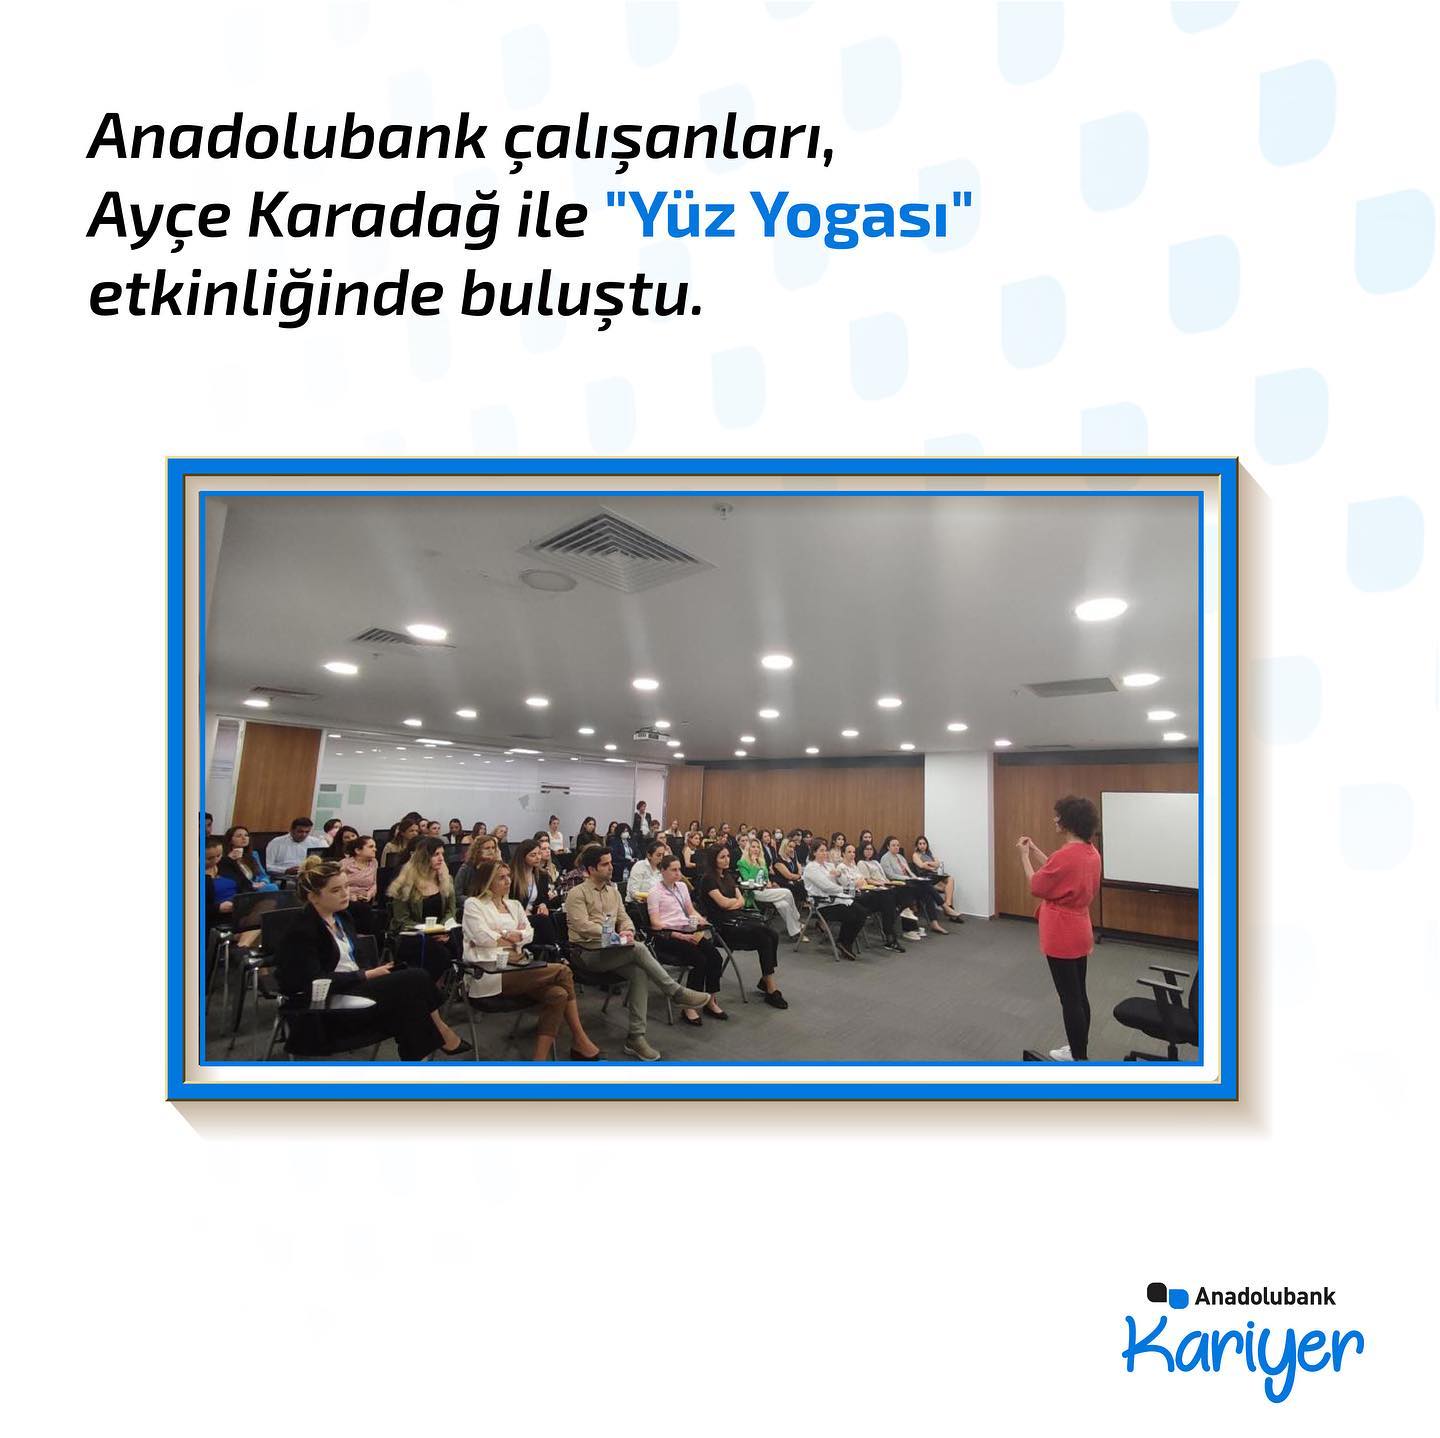 Anadolubank Çalışanları, Ayçe Karadağ ile “Yüz Yogası” etkinliğinde buluşuyor!  - 1